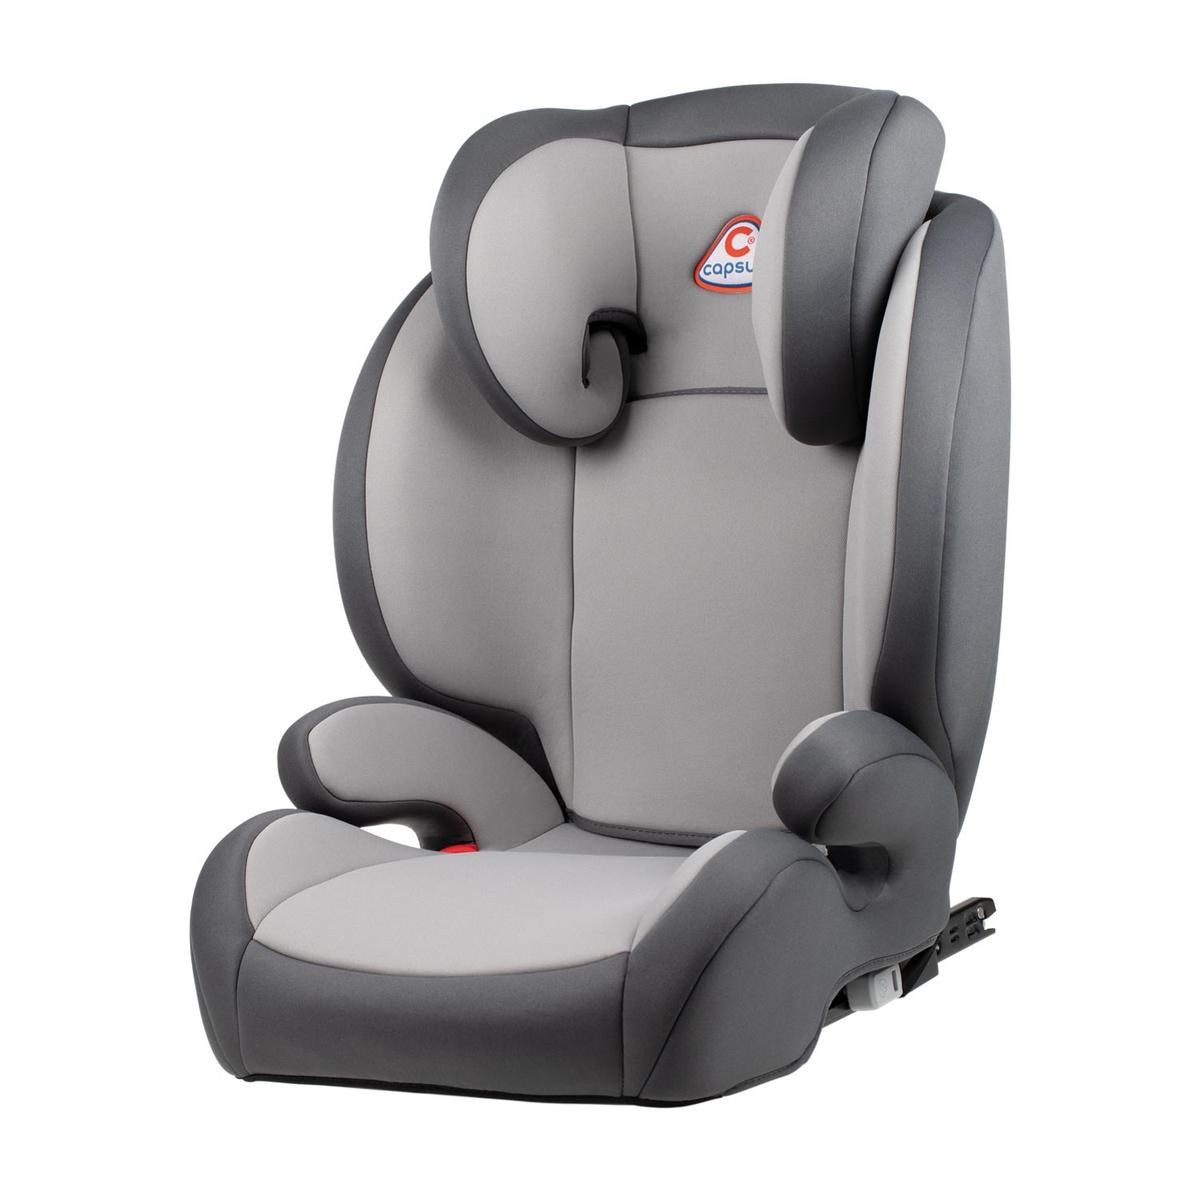 Kindersitz für VW POLO  günstig kaufen in AUTODOC Online Shop